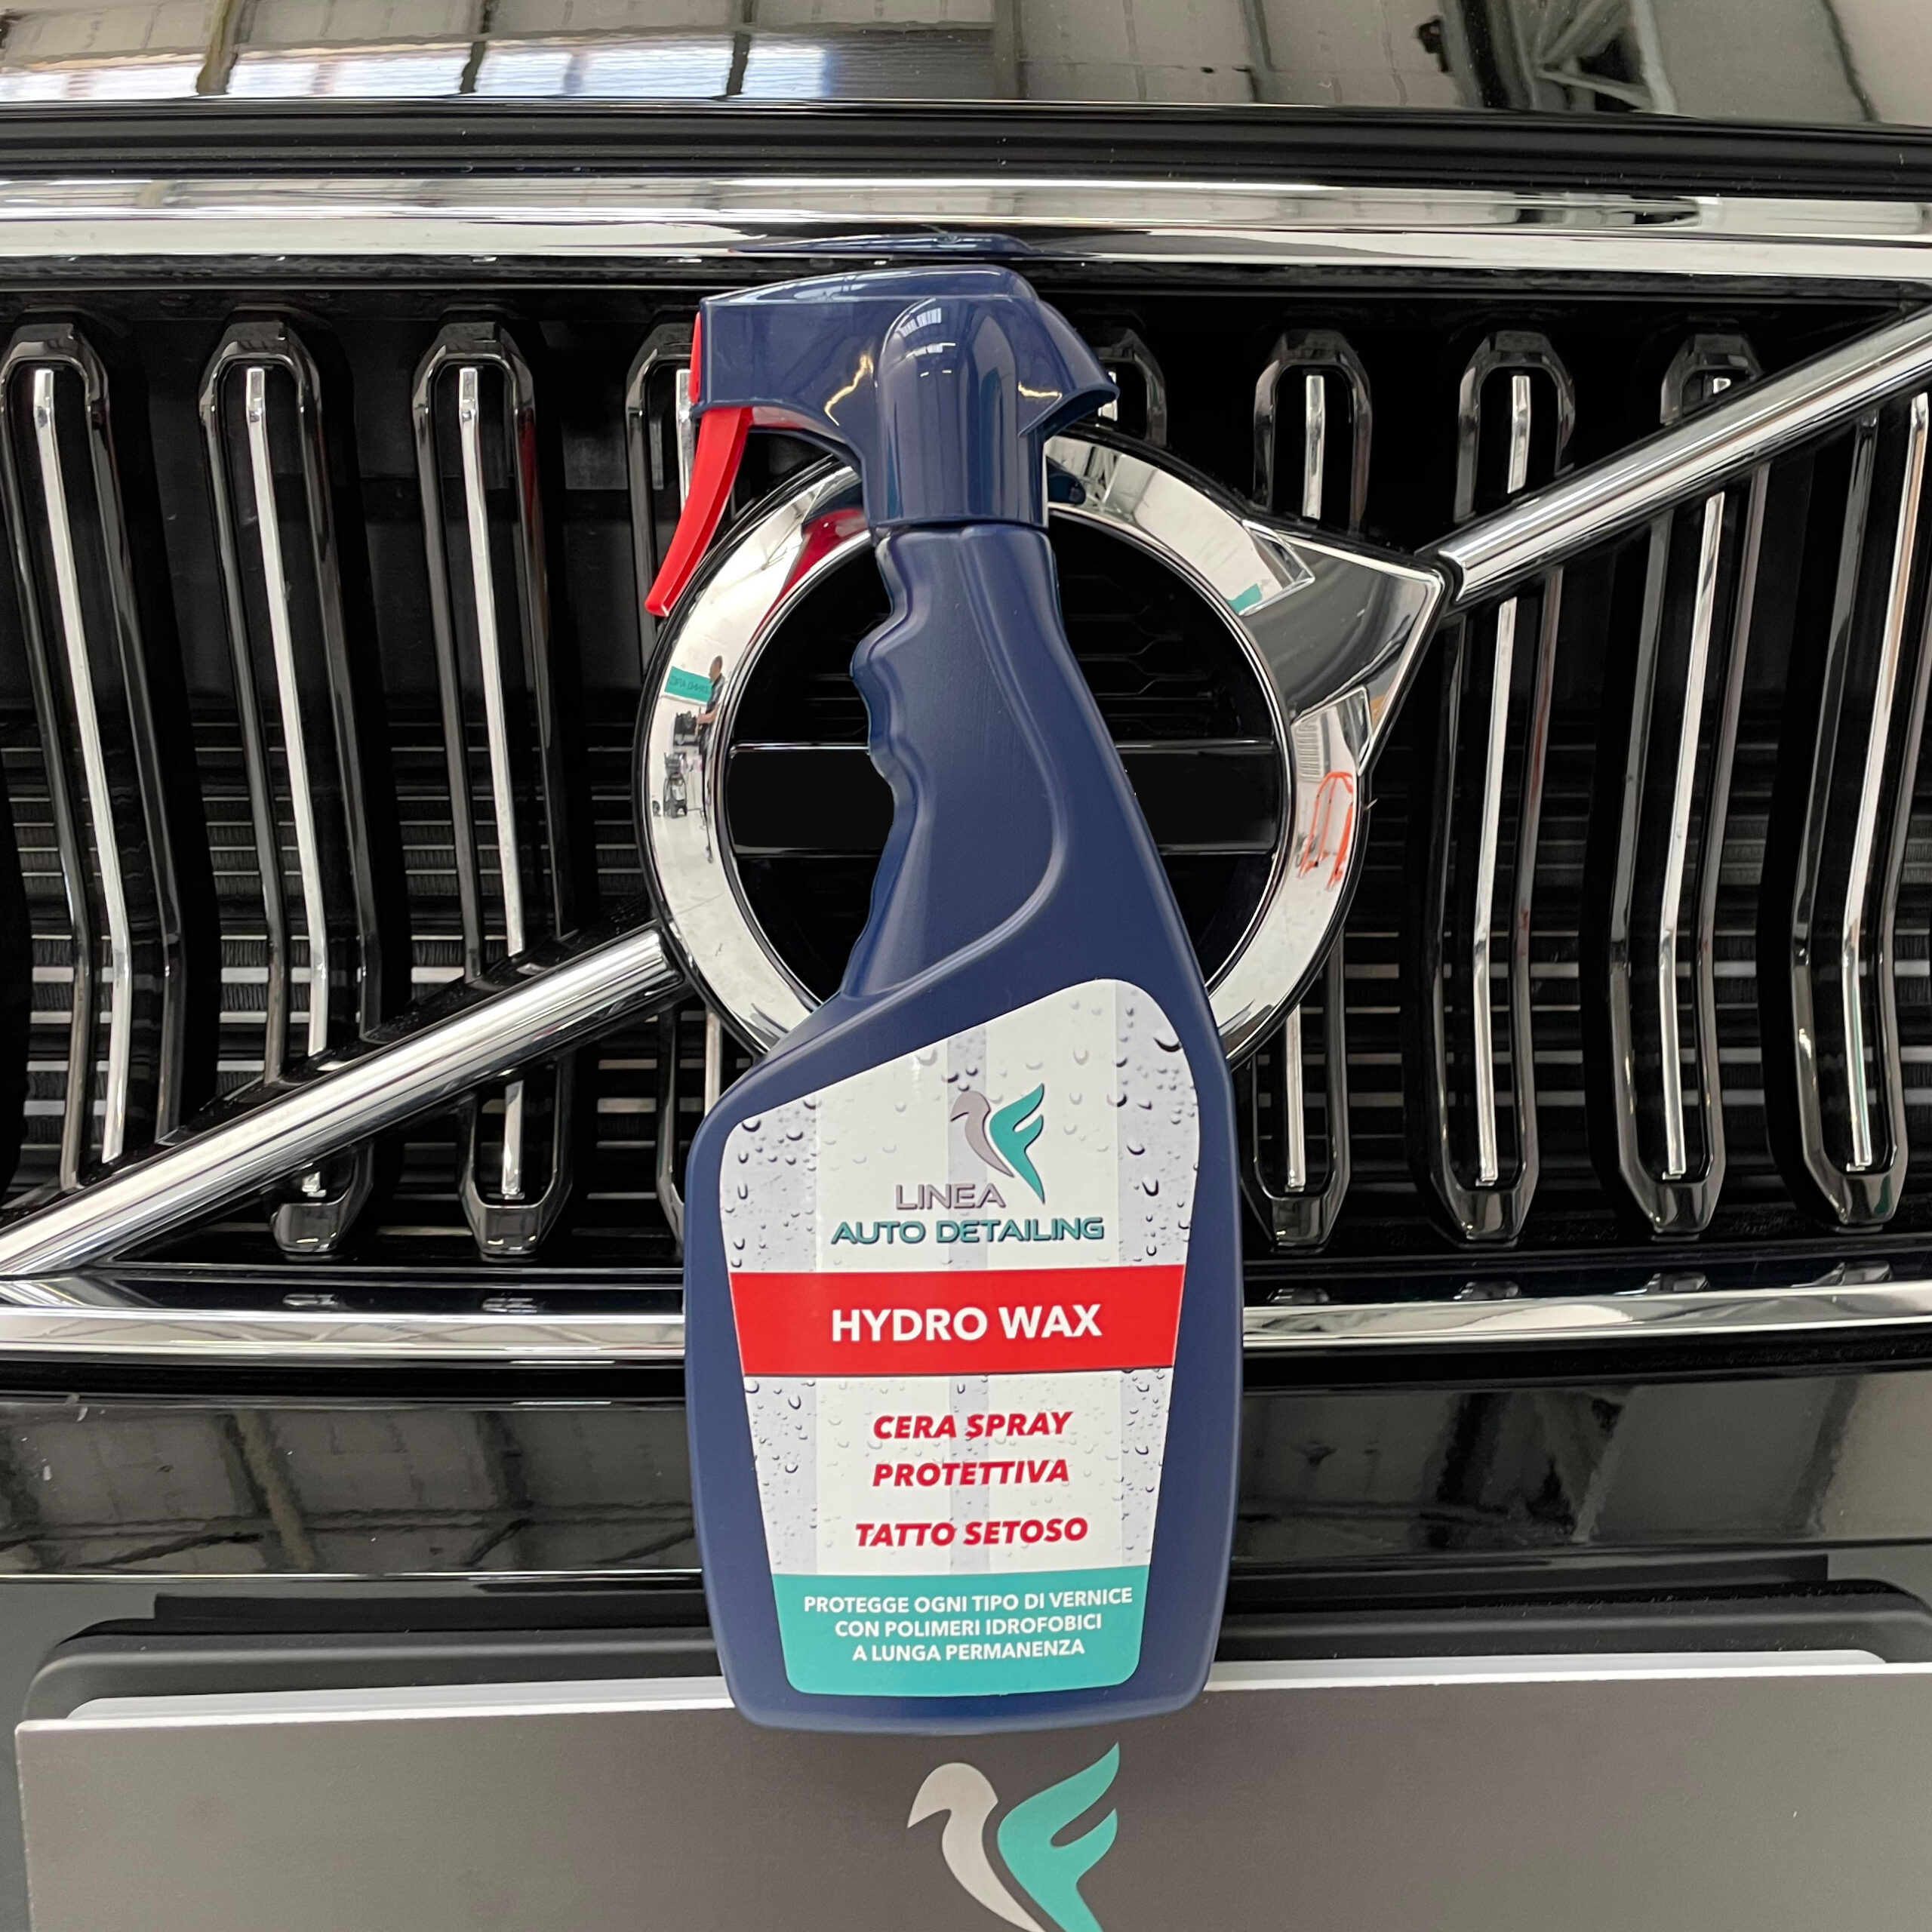 Hydro Wax – Cera Spray Protettiva – Ferrari Auto Detailing